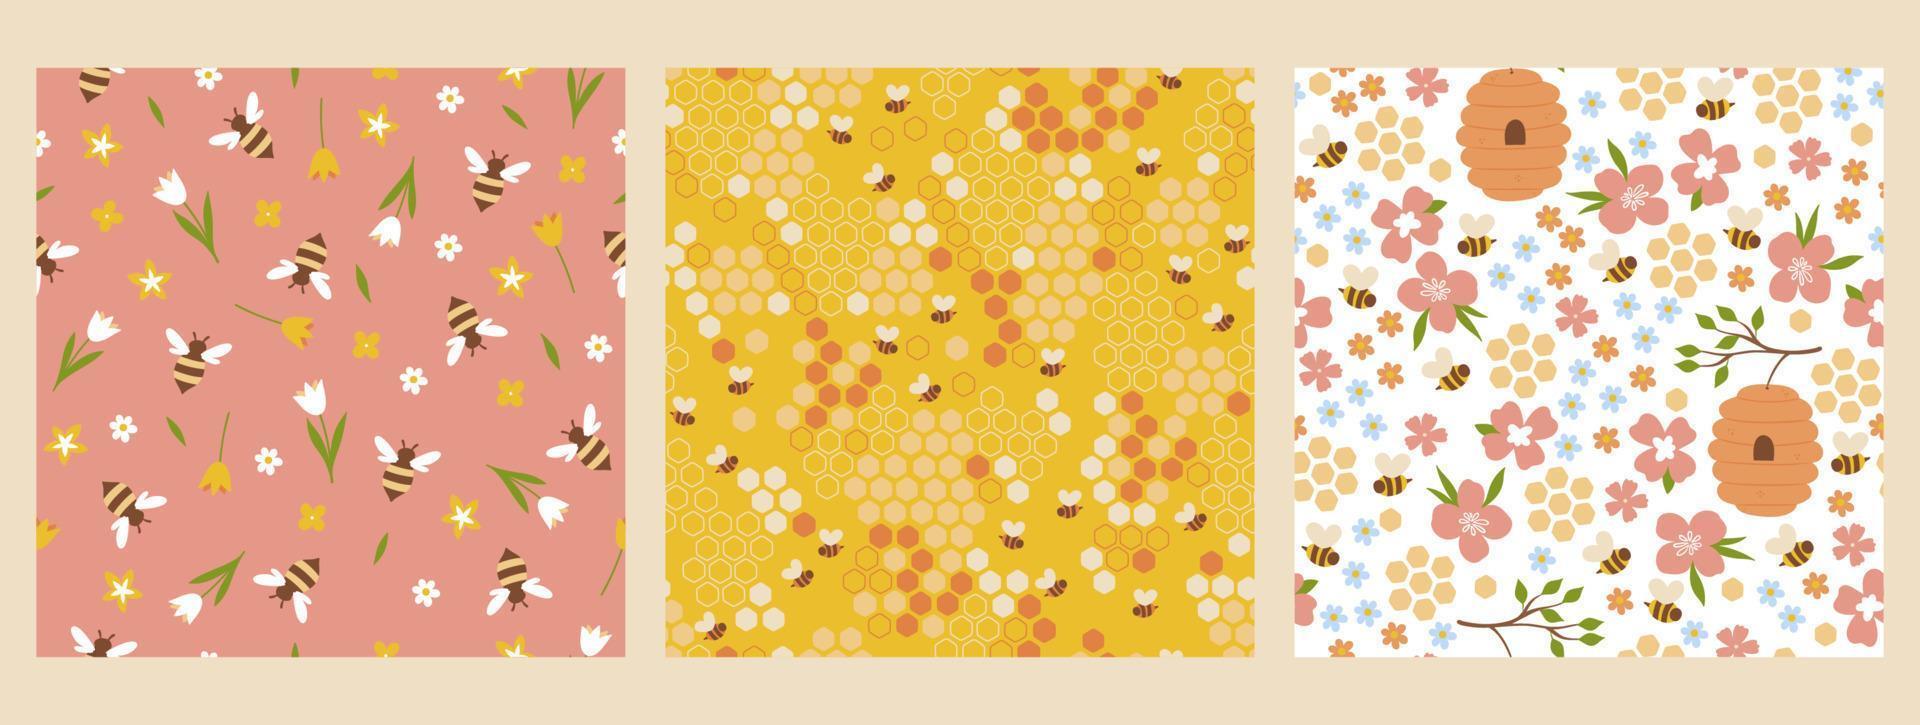 uppsättning av sömlös mönster med bin och blommor. vektor grafik.